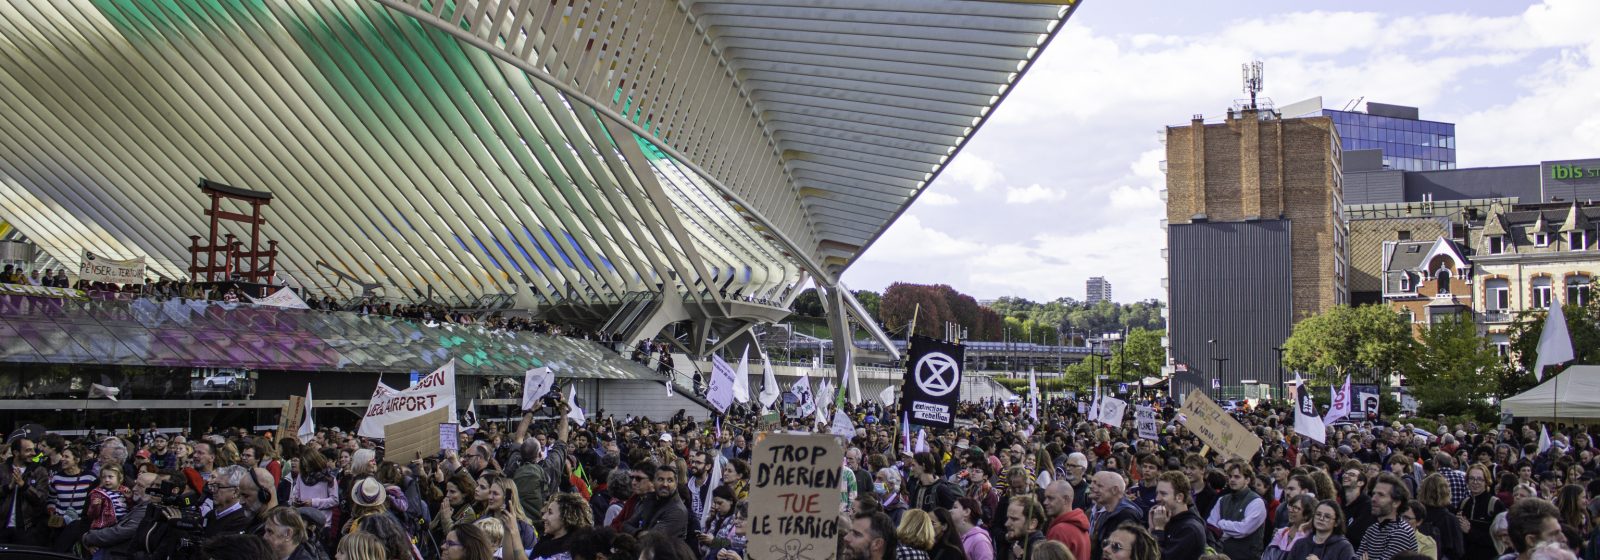 Demonstranten tegen uitbreiding Liège Airport